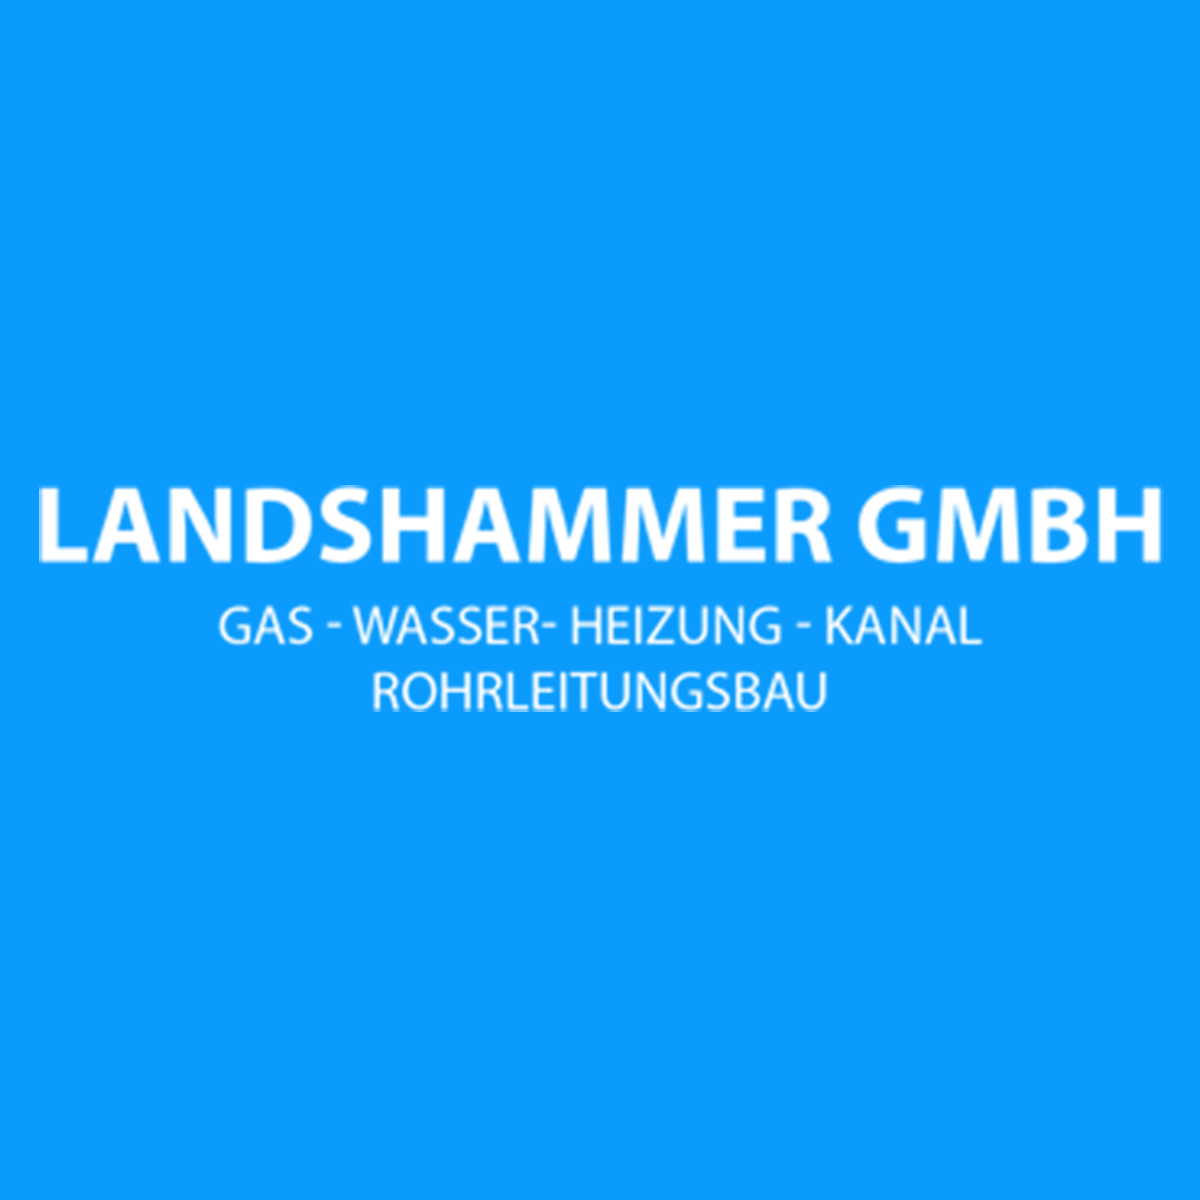 Landshammer GmbH Gas-Wasser-Heizung-Kanal Rohrleitungsbau in München - Logo